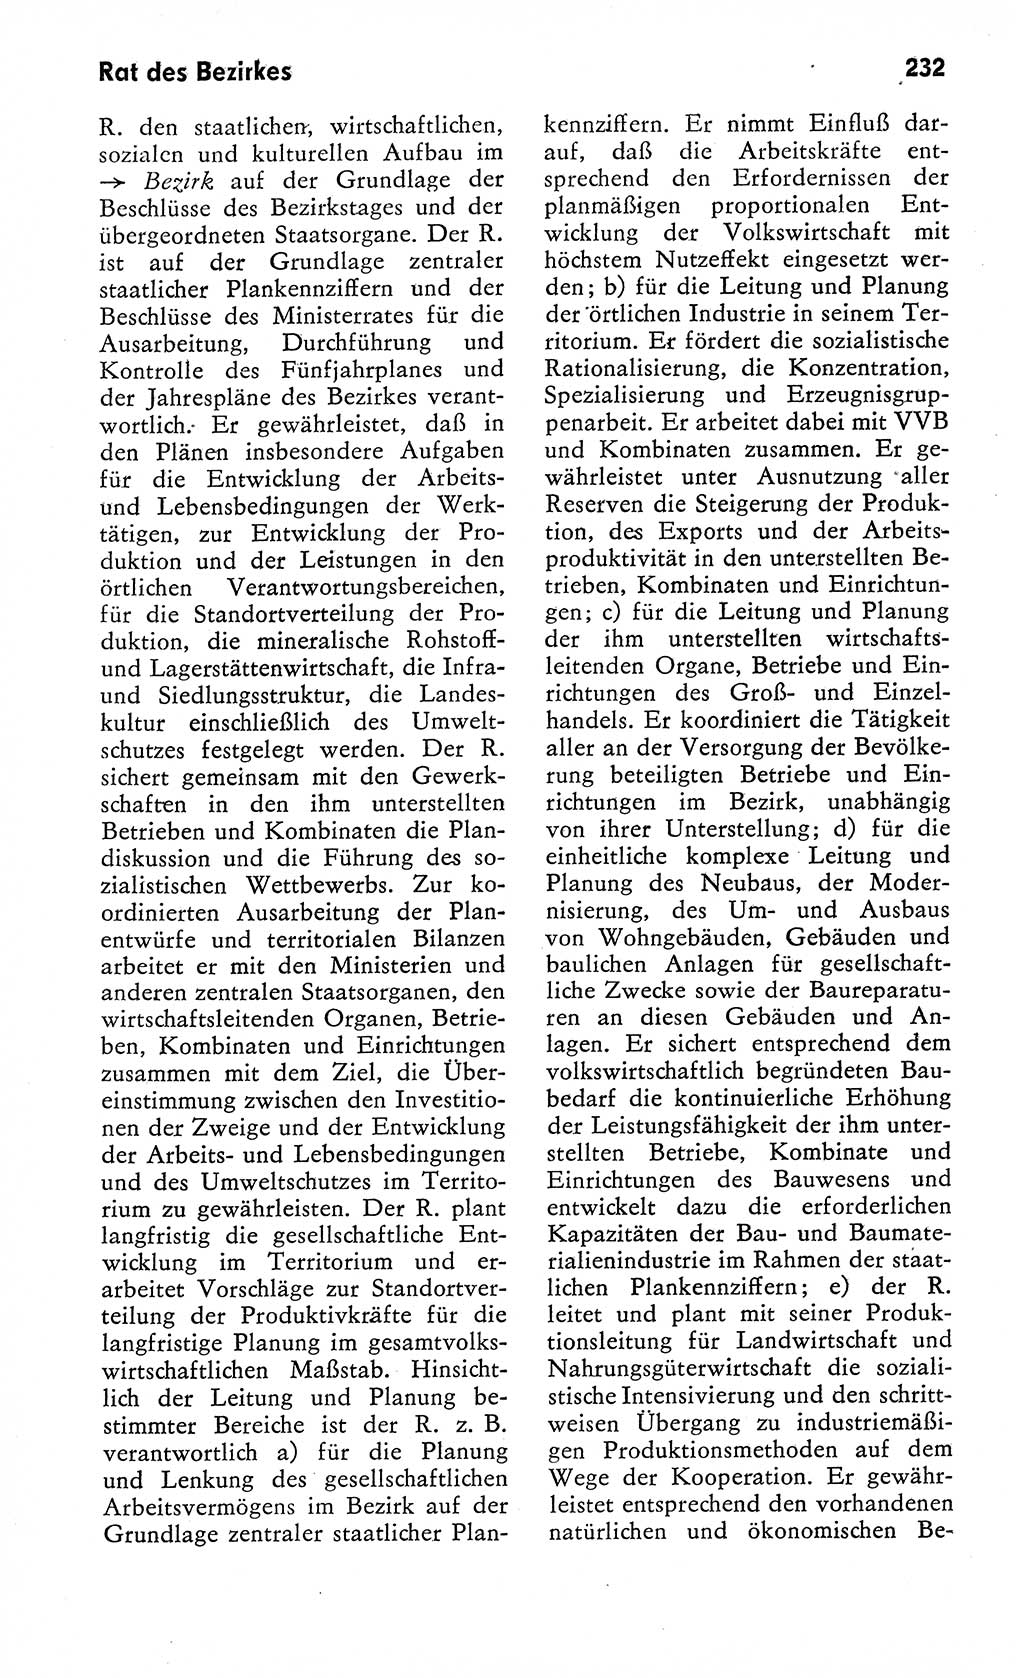 Wörterbuch zum sozialistischen Staat [Deutsche Demokratische Republik (DDR)] 1974, Seite 232 (Wb. soz. St. DDR 1974, S. 232)